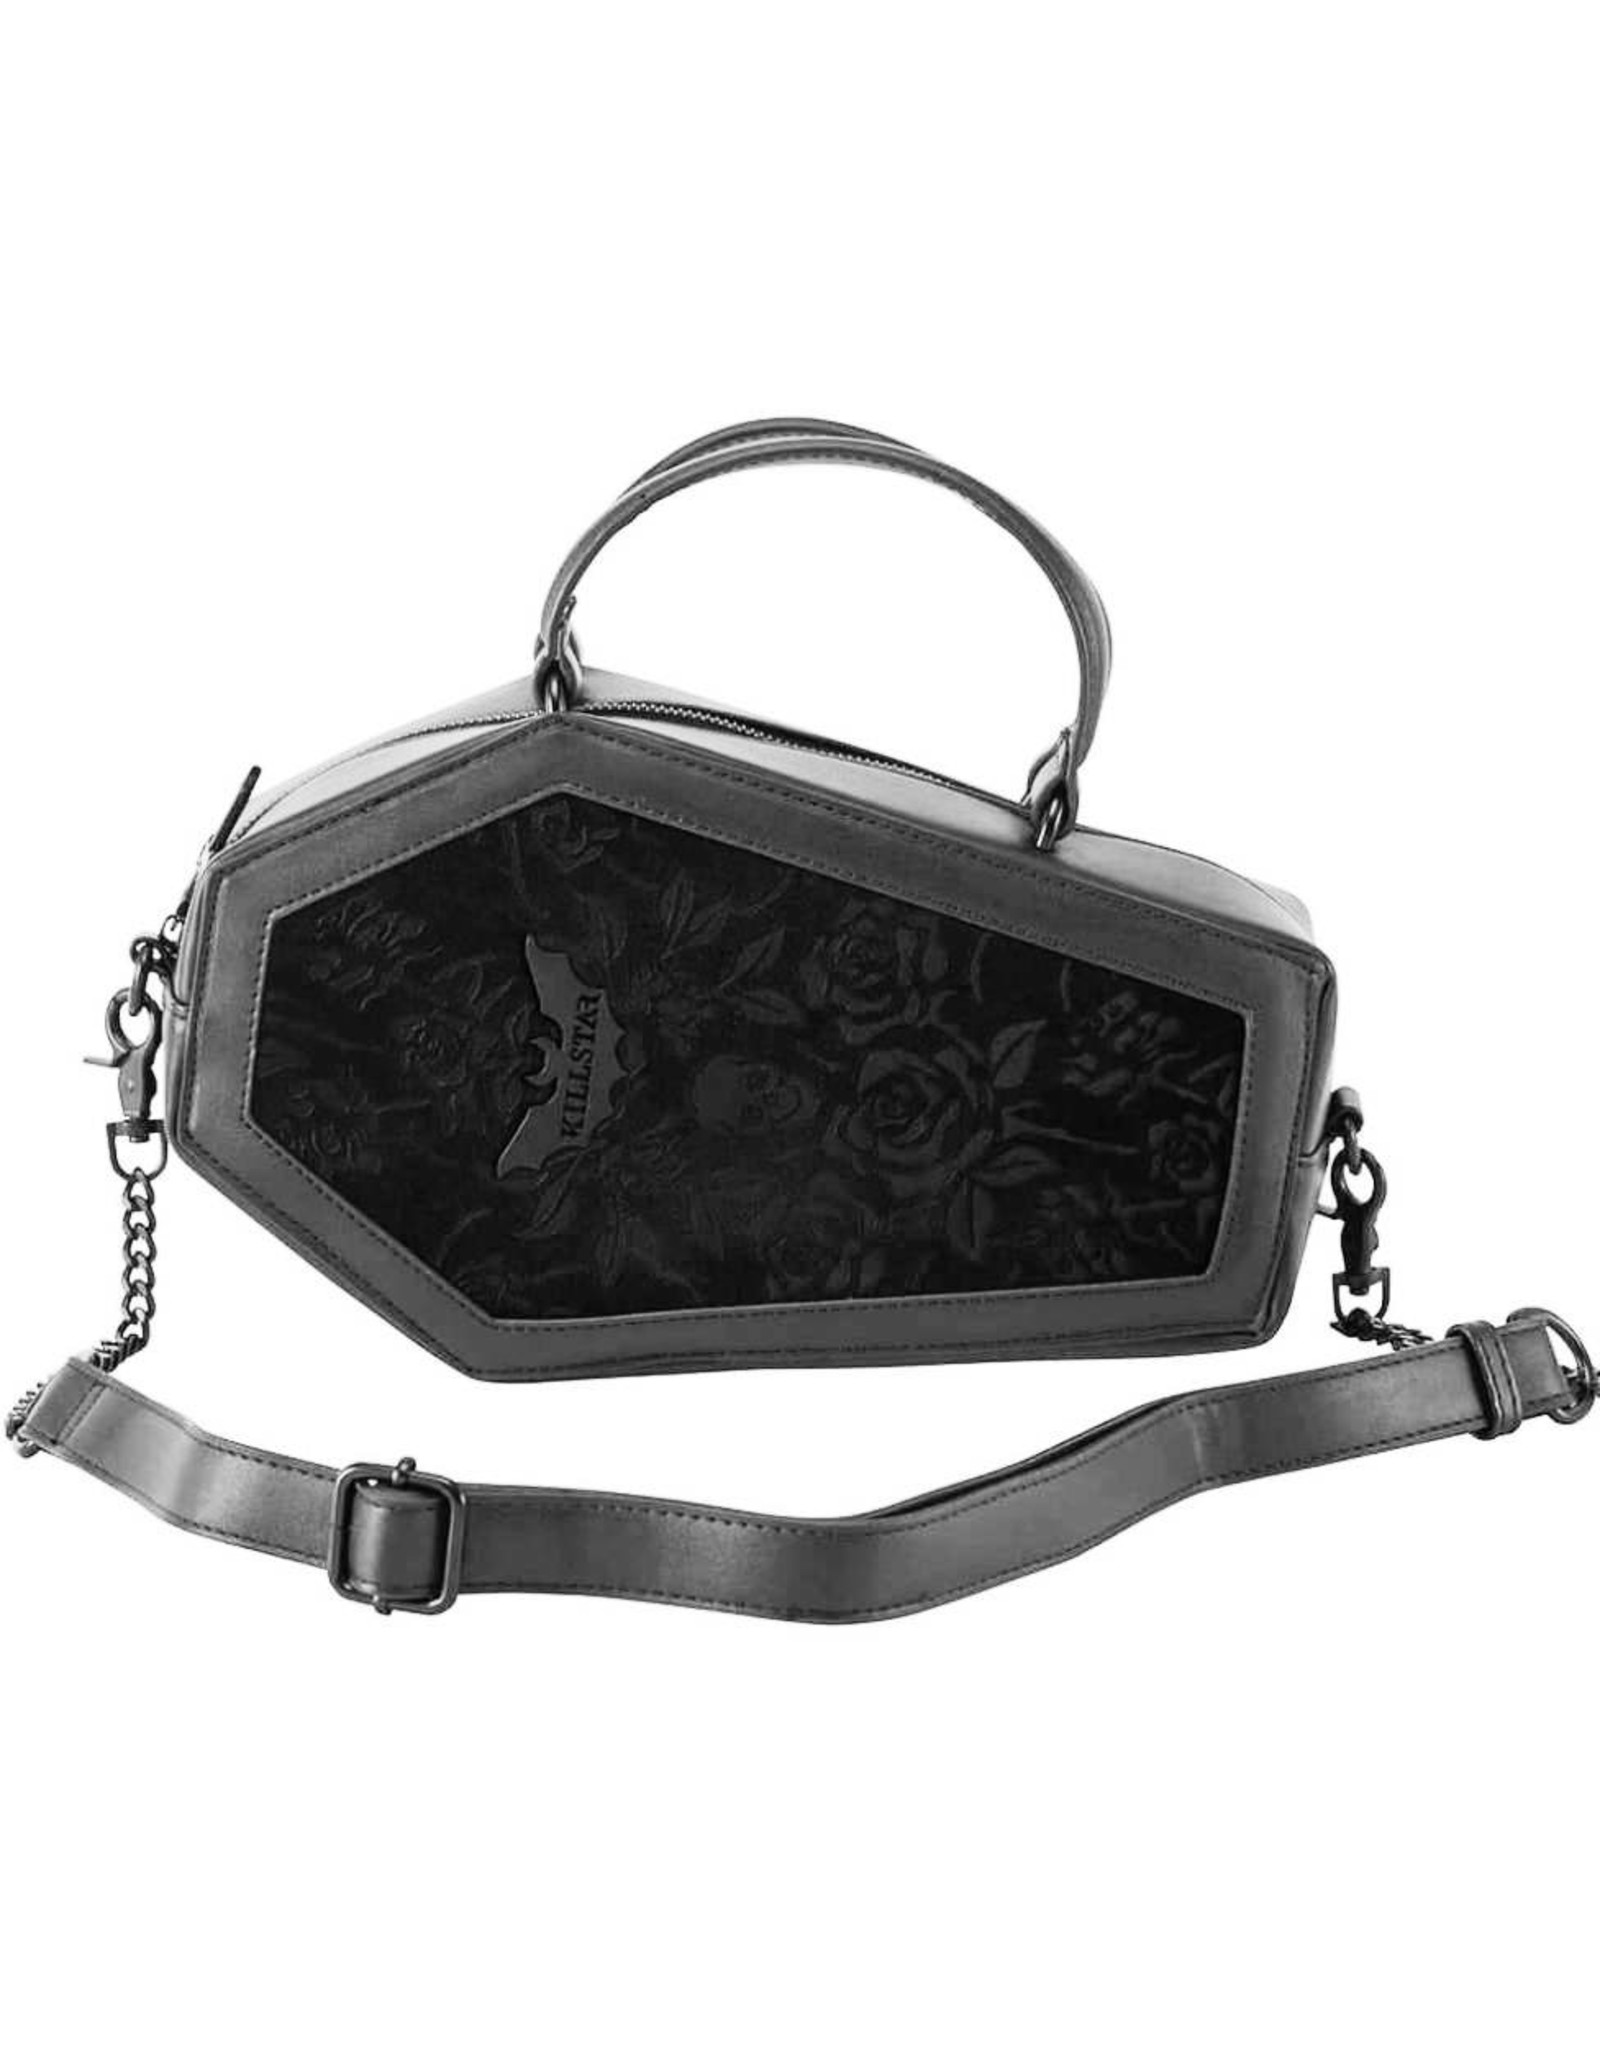 Killstar Killstar bags and accessories - Killstar Vampire's Kiss coffin handbag (black)